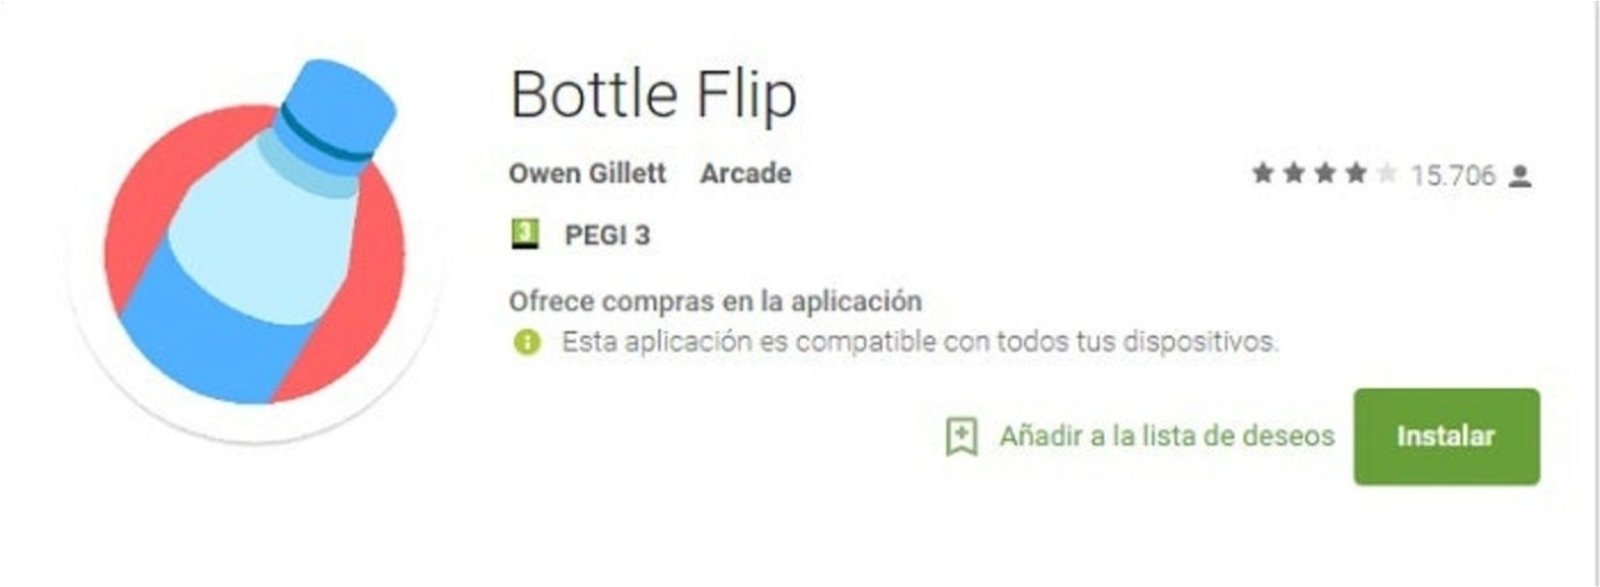 bottle_fliip